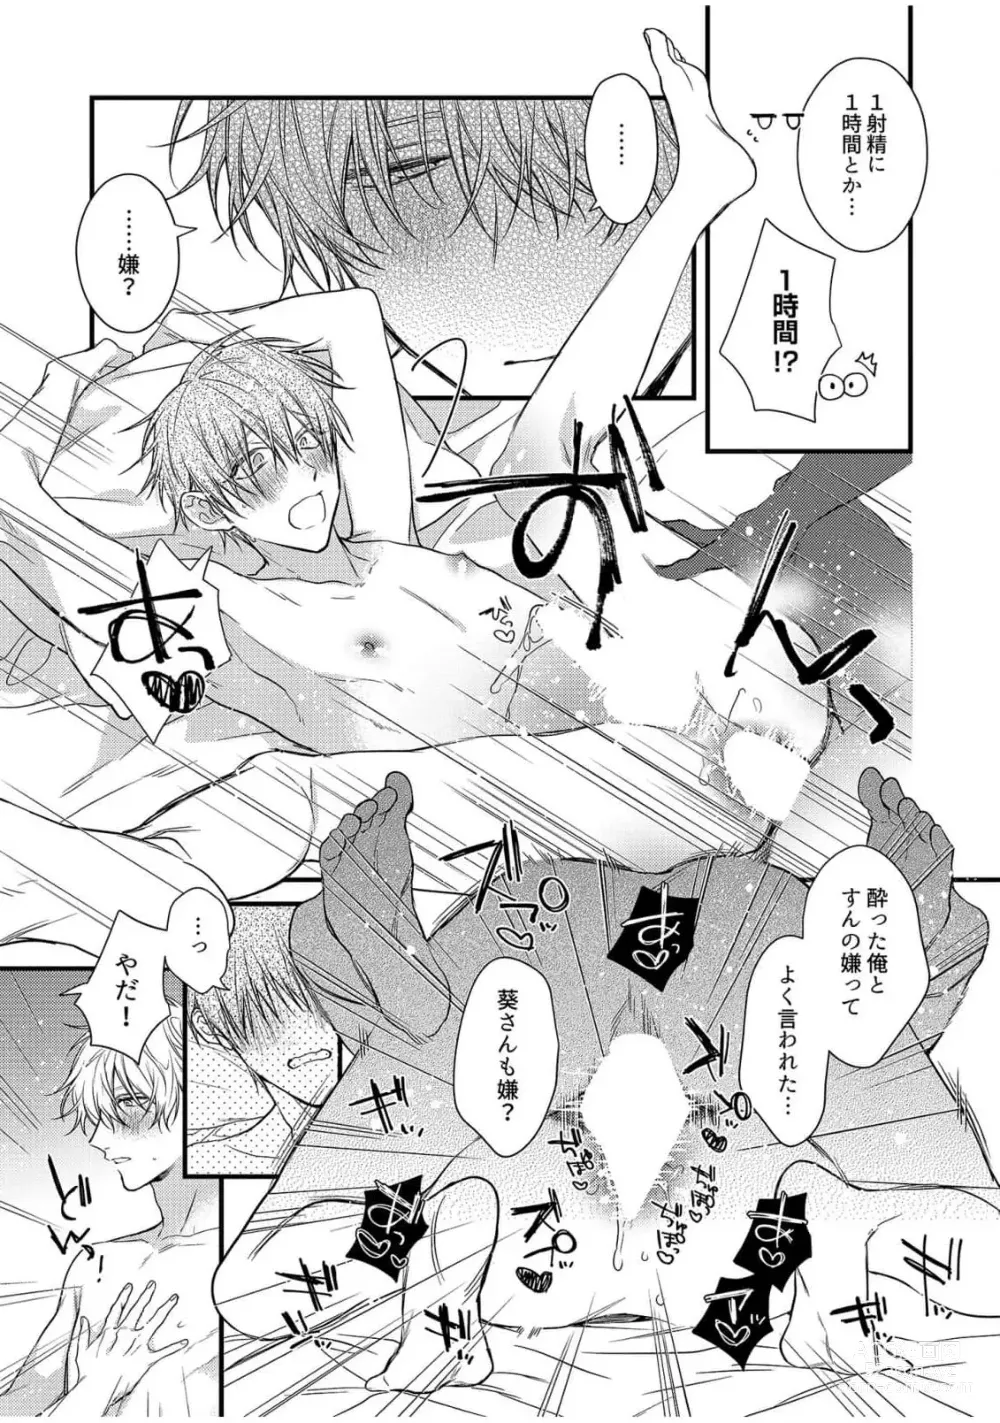 Page 209 of manga Ecchi wa shuu 7 Kibou Desu!